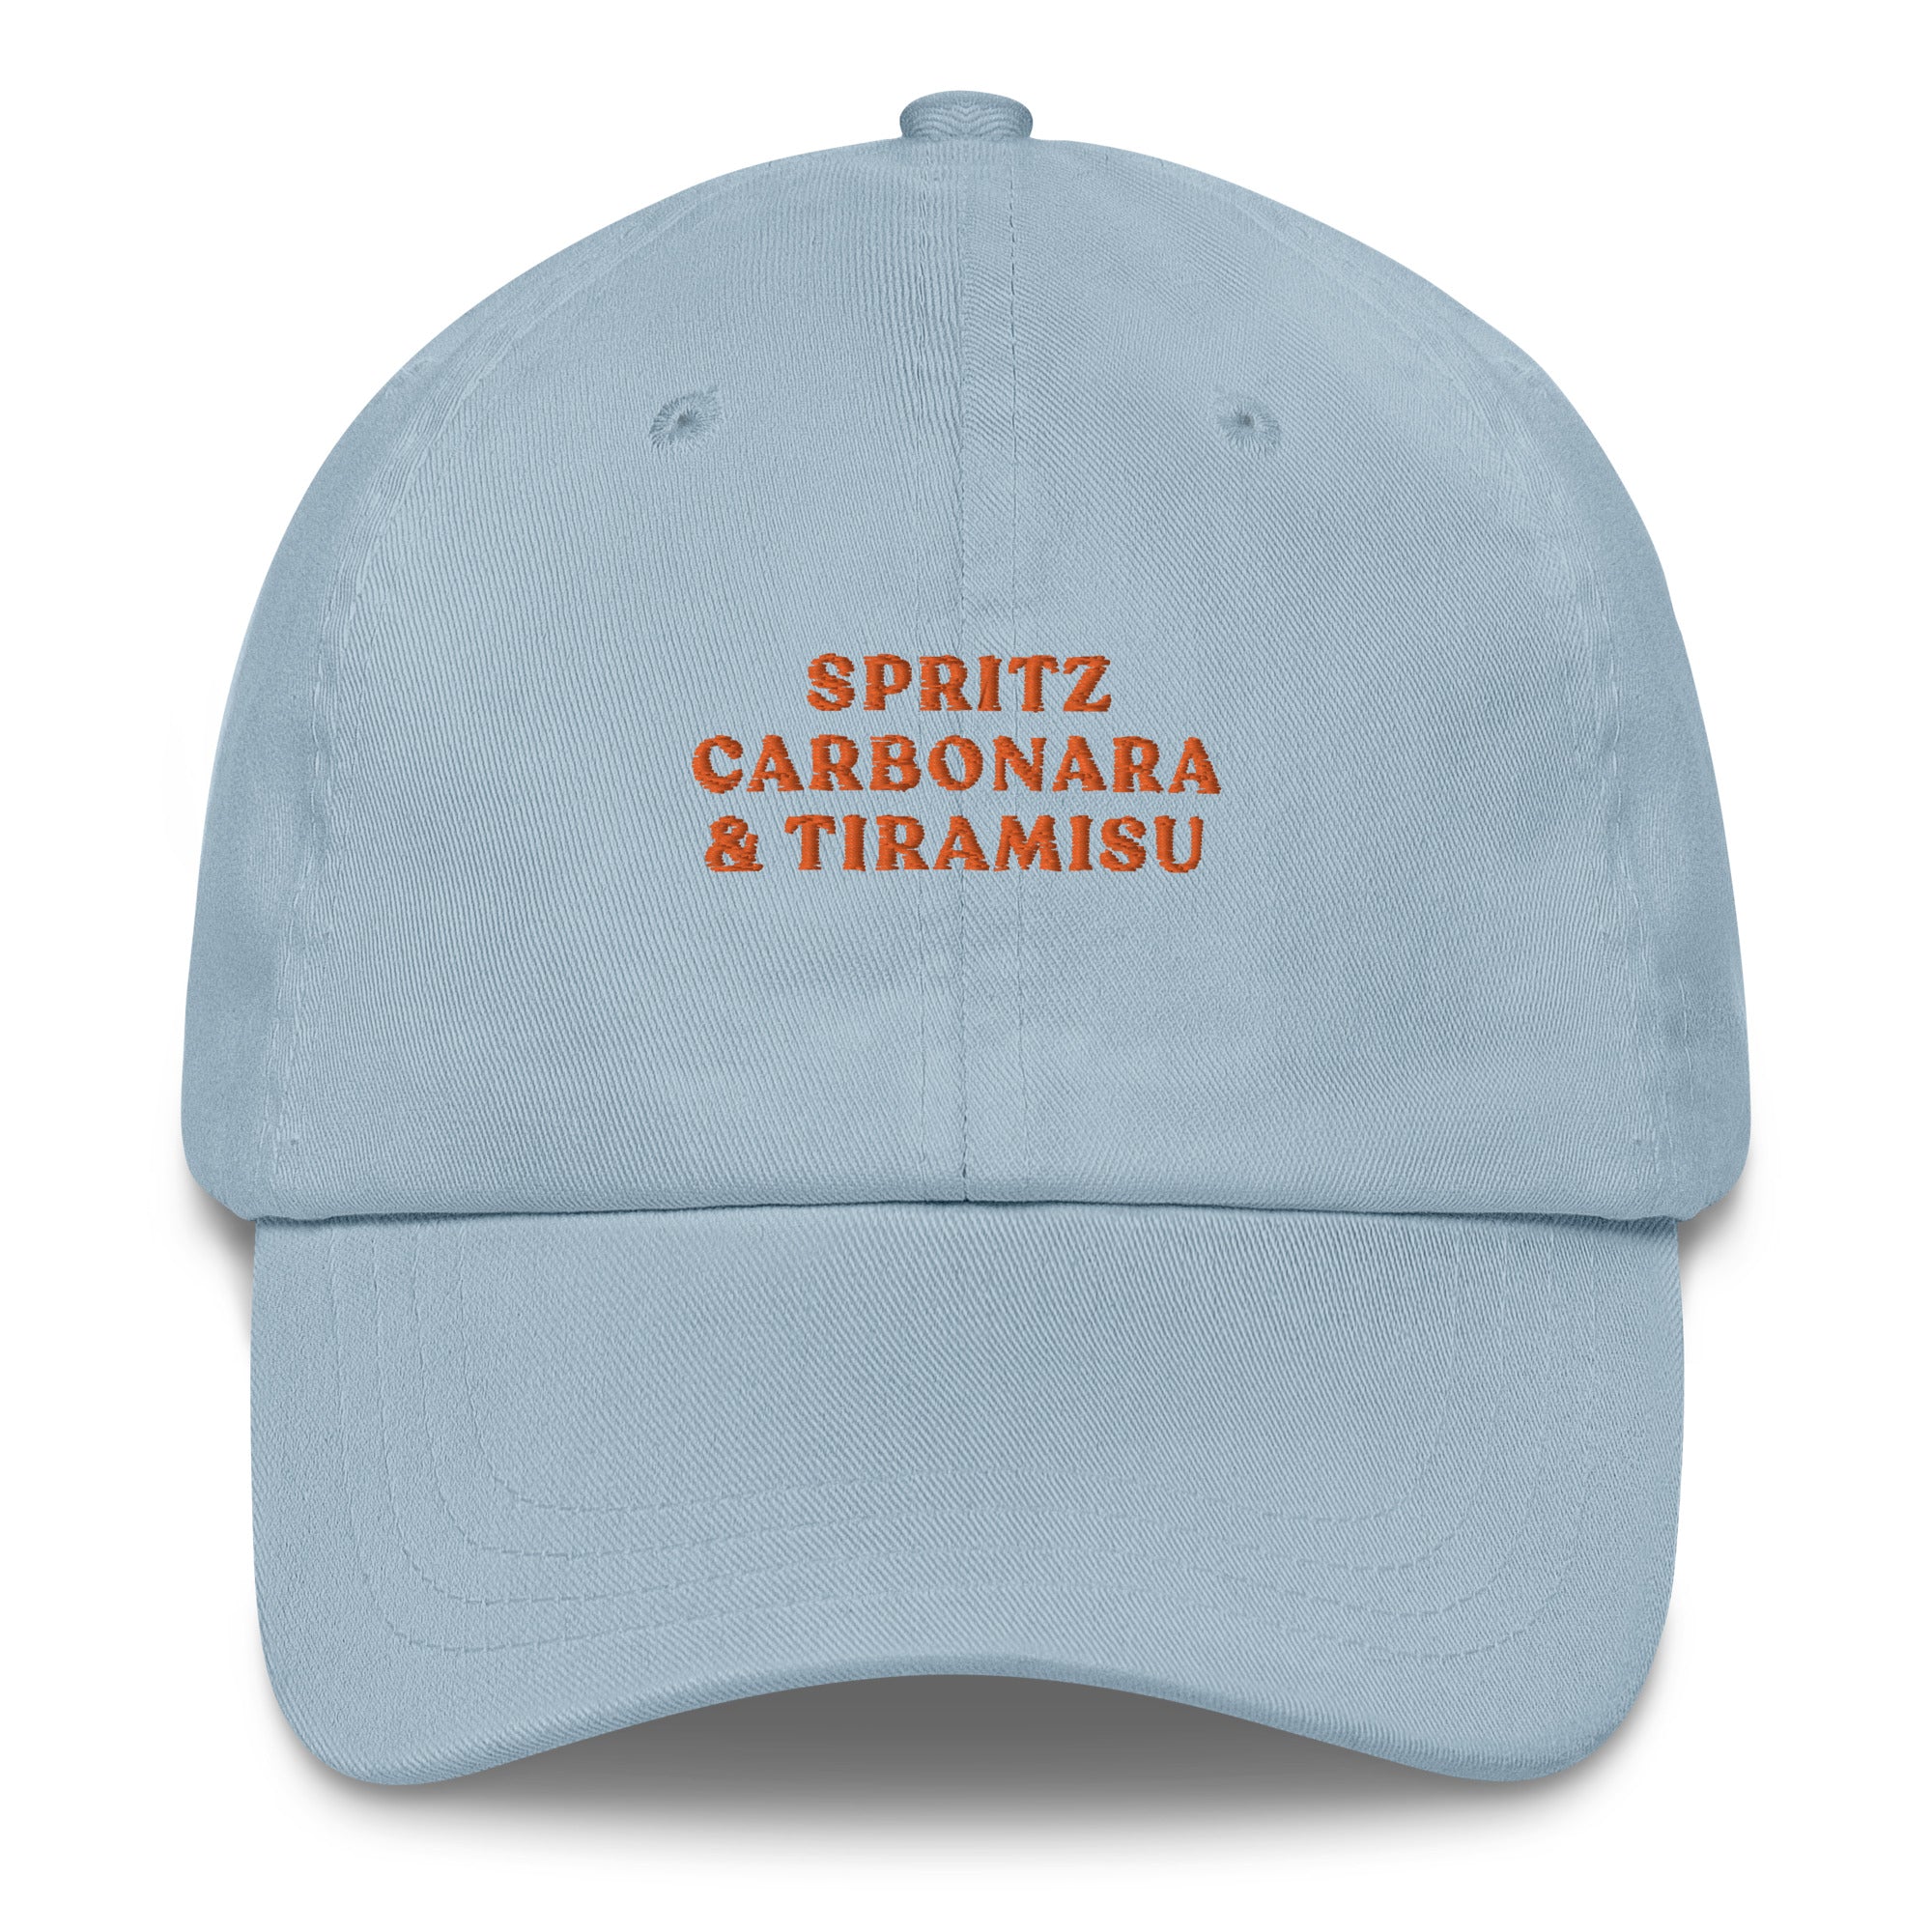 Spritz Carbonara & Tiramisu - Cap